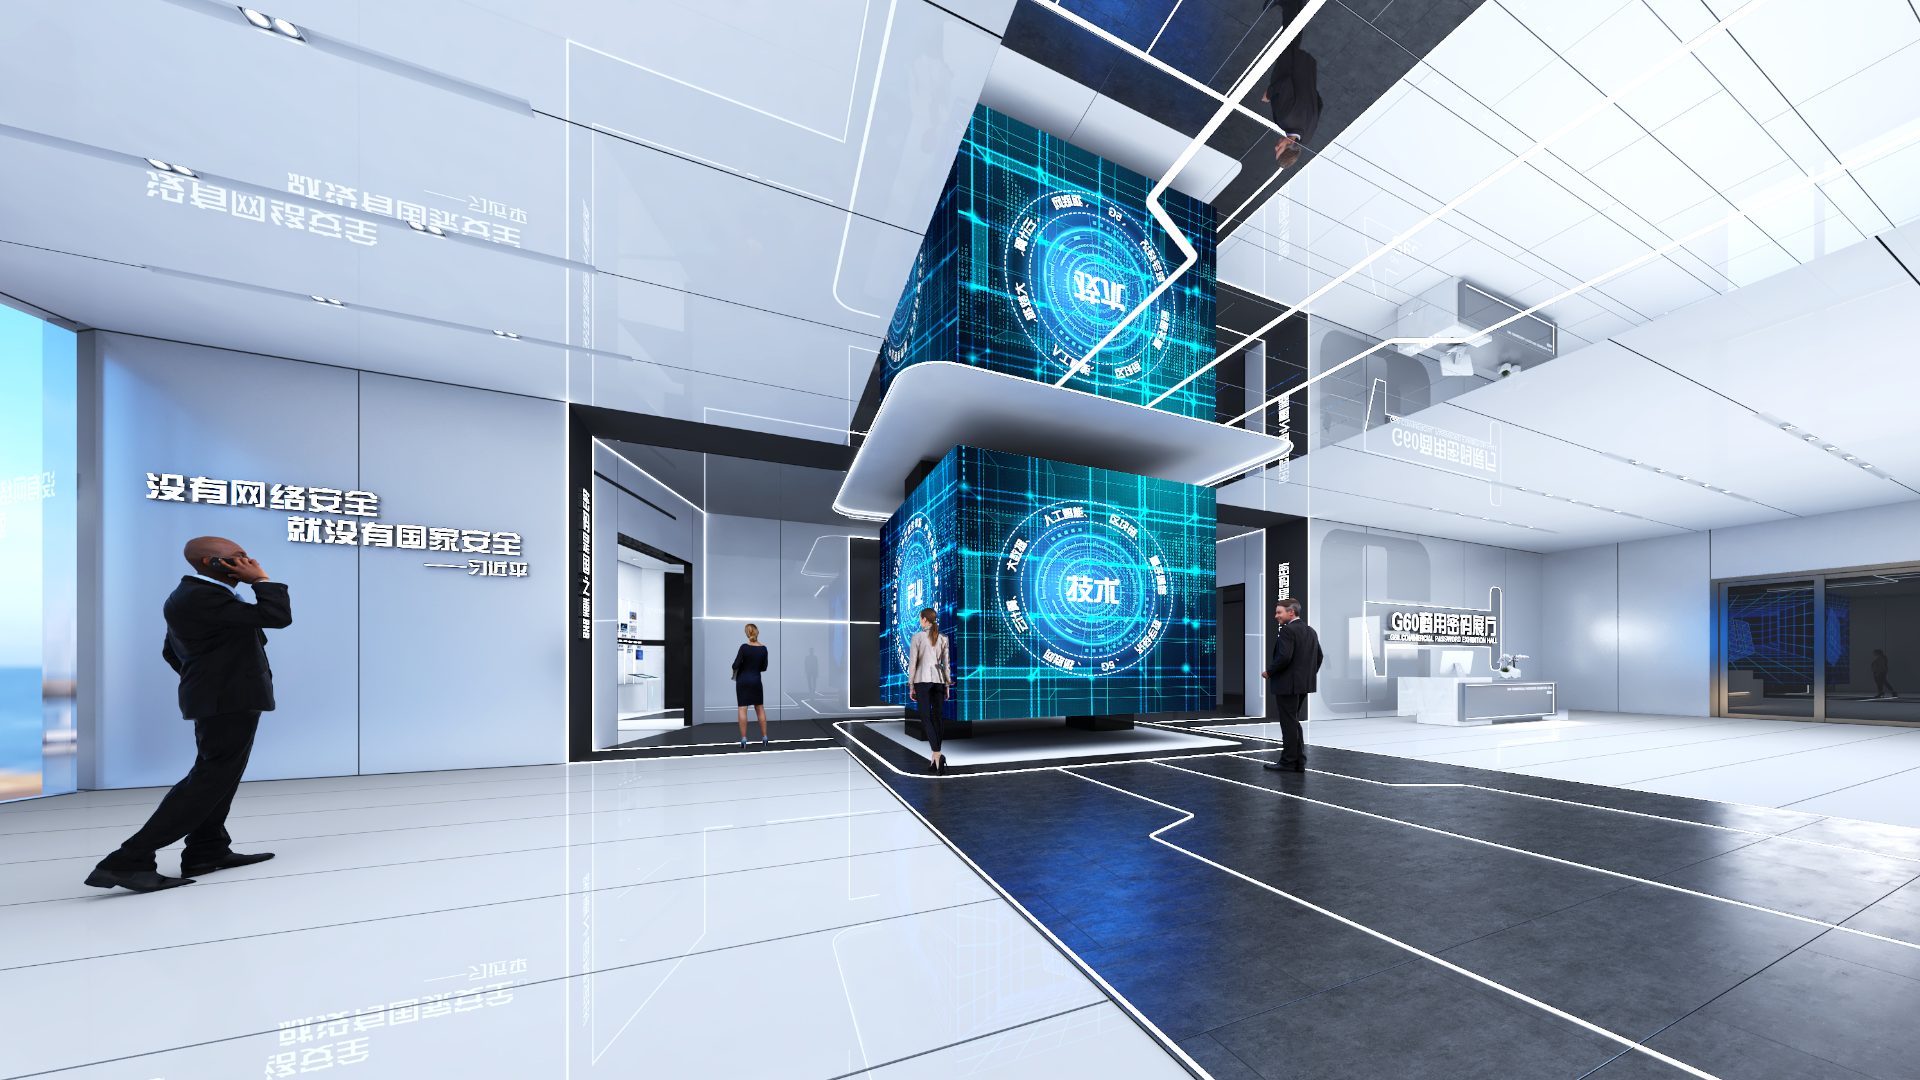 G60商业密码产业基地展厅设计